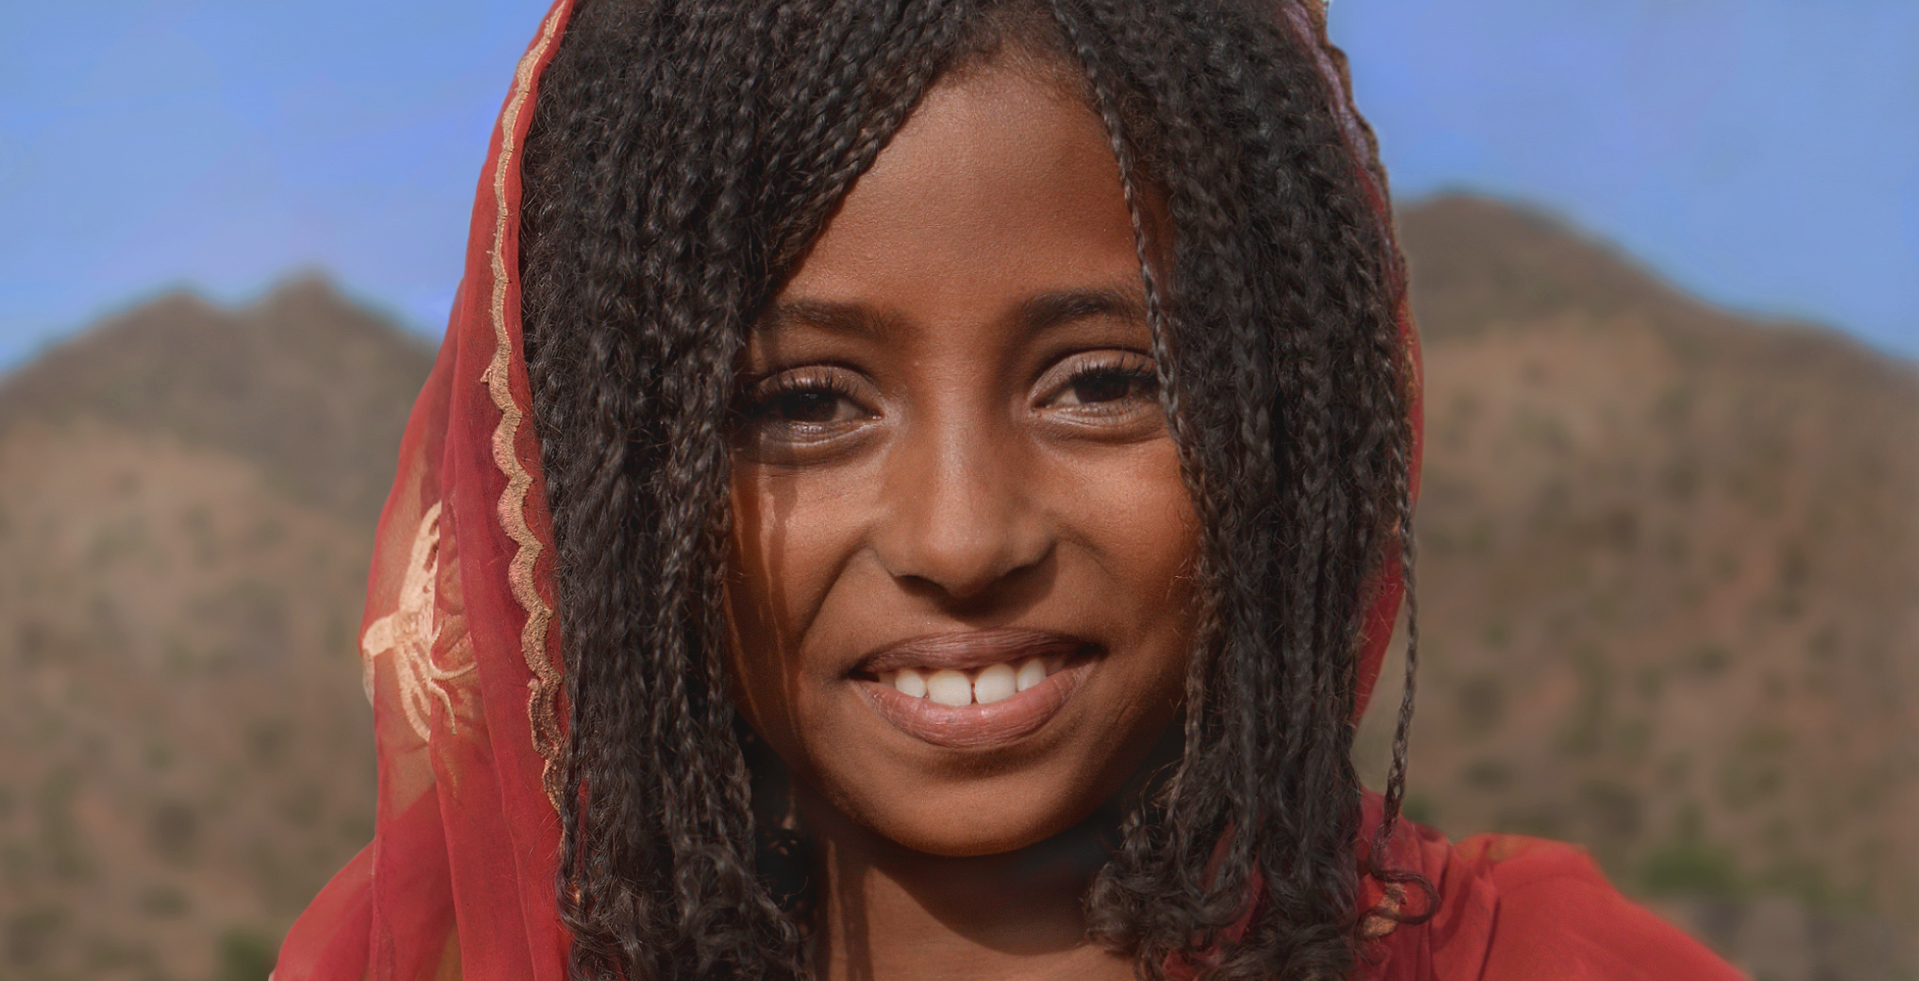 Afrikanisches Mädchen vor Wüstenlandschaft